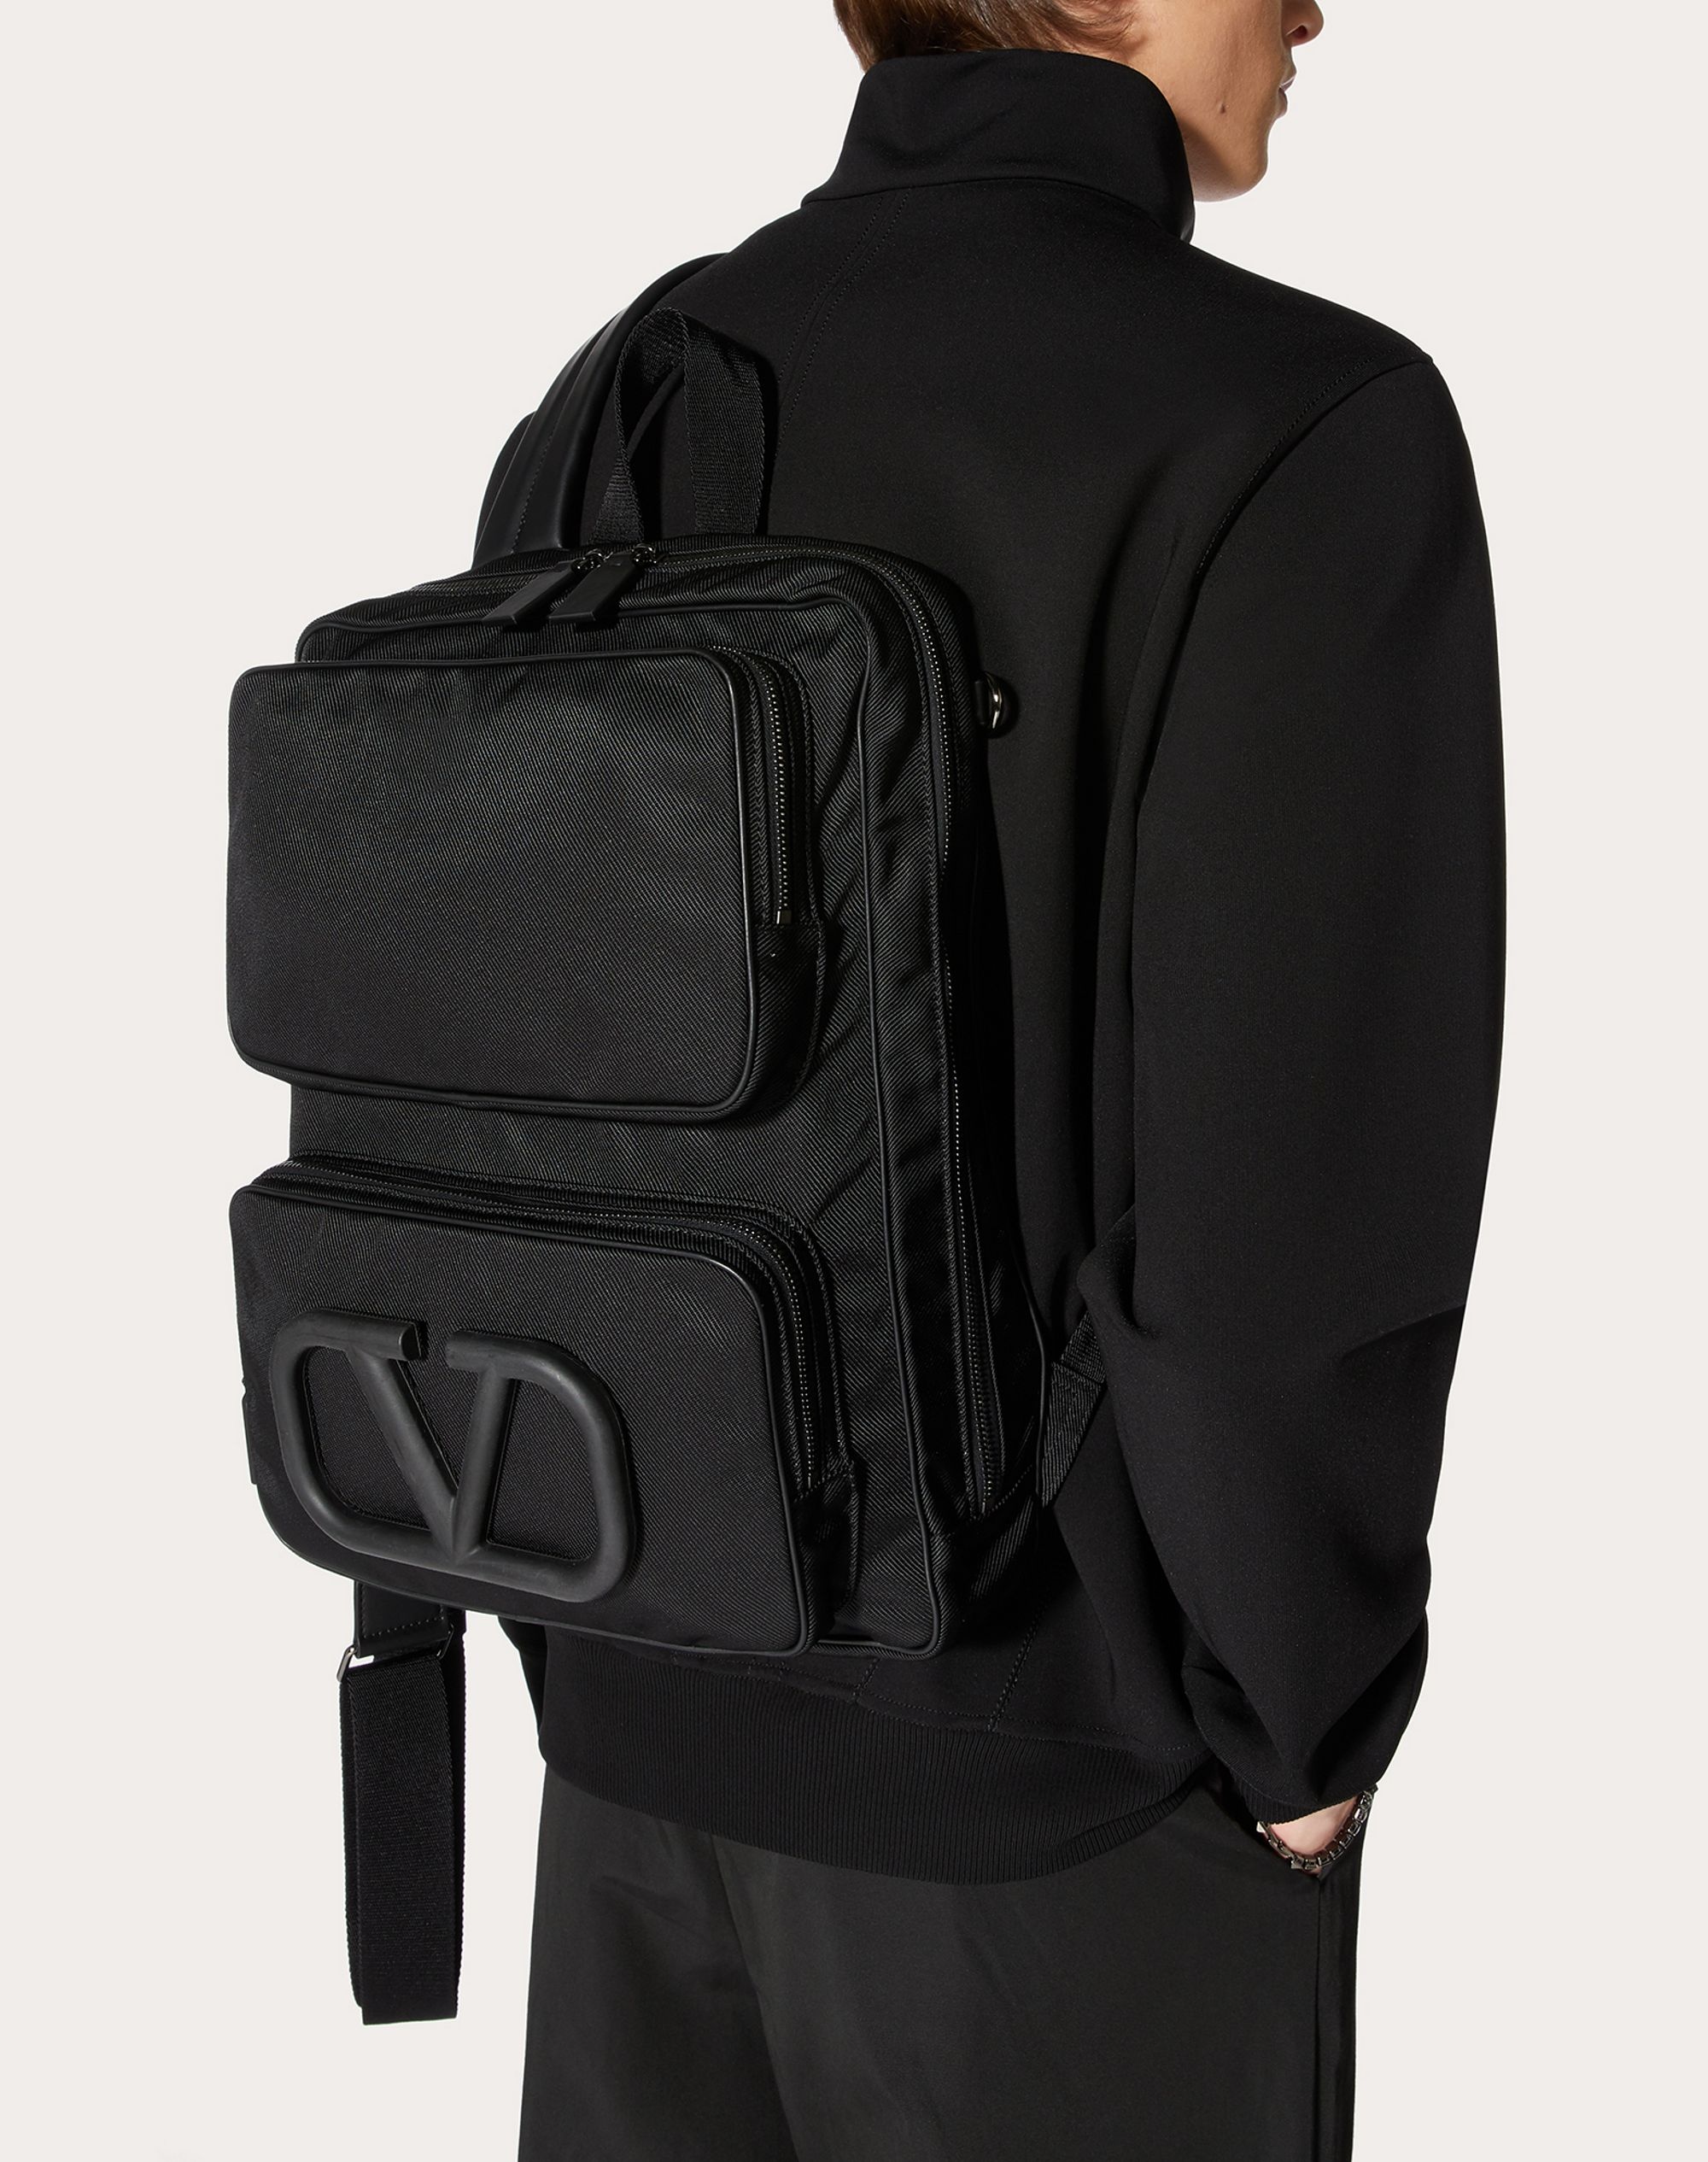 Supervee Backpack in Nylon - 6